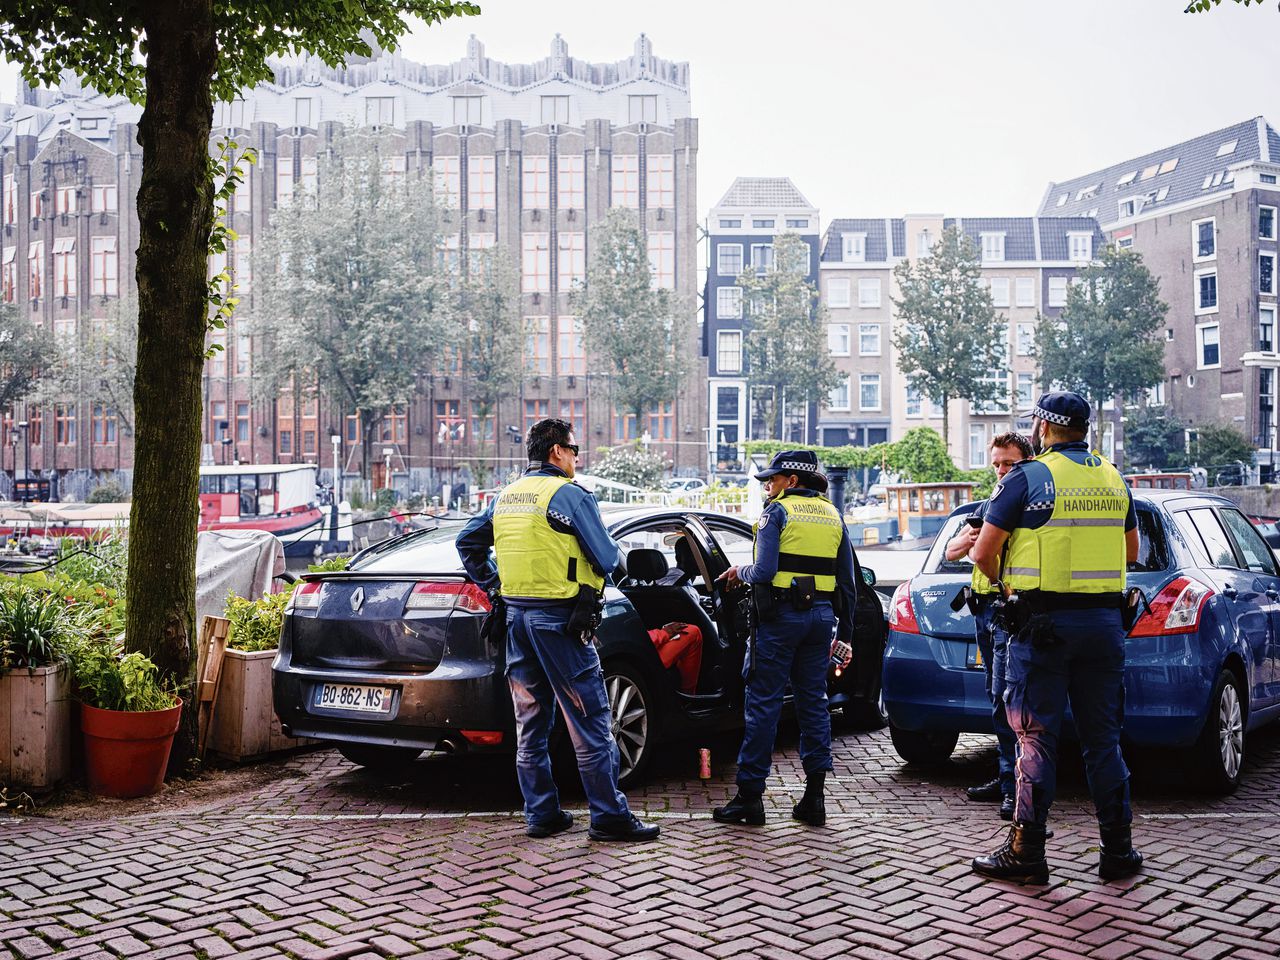 Amsterdamse boa’s zoeken toeristen die vooral zuipen en drugs gebruiken en daarna ’s nachts in hun auto slapen.